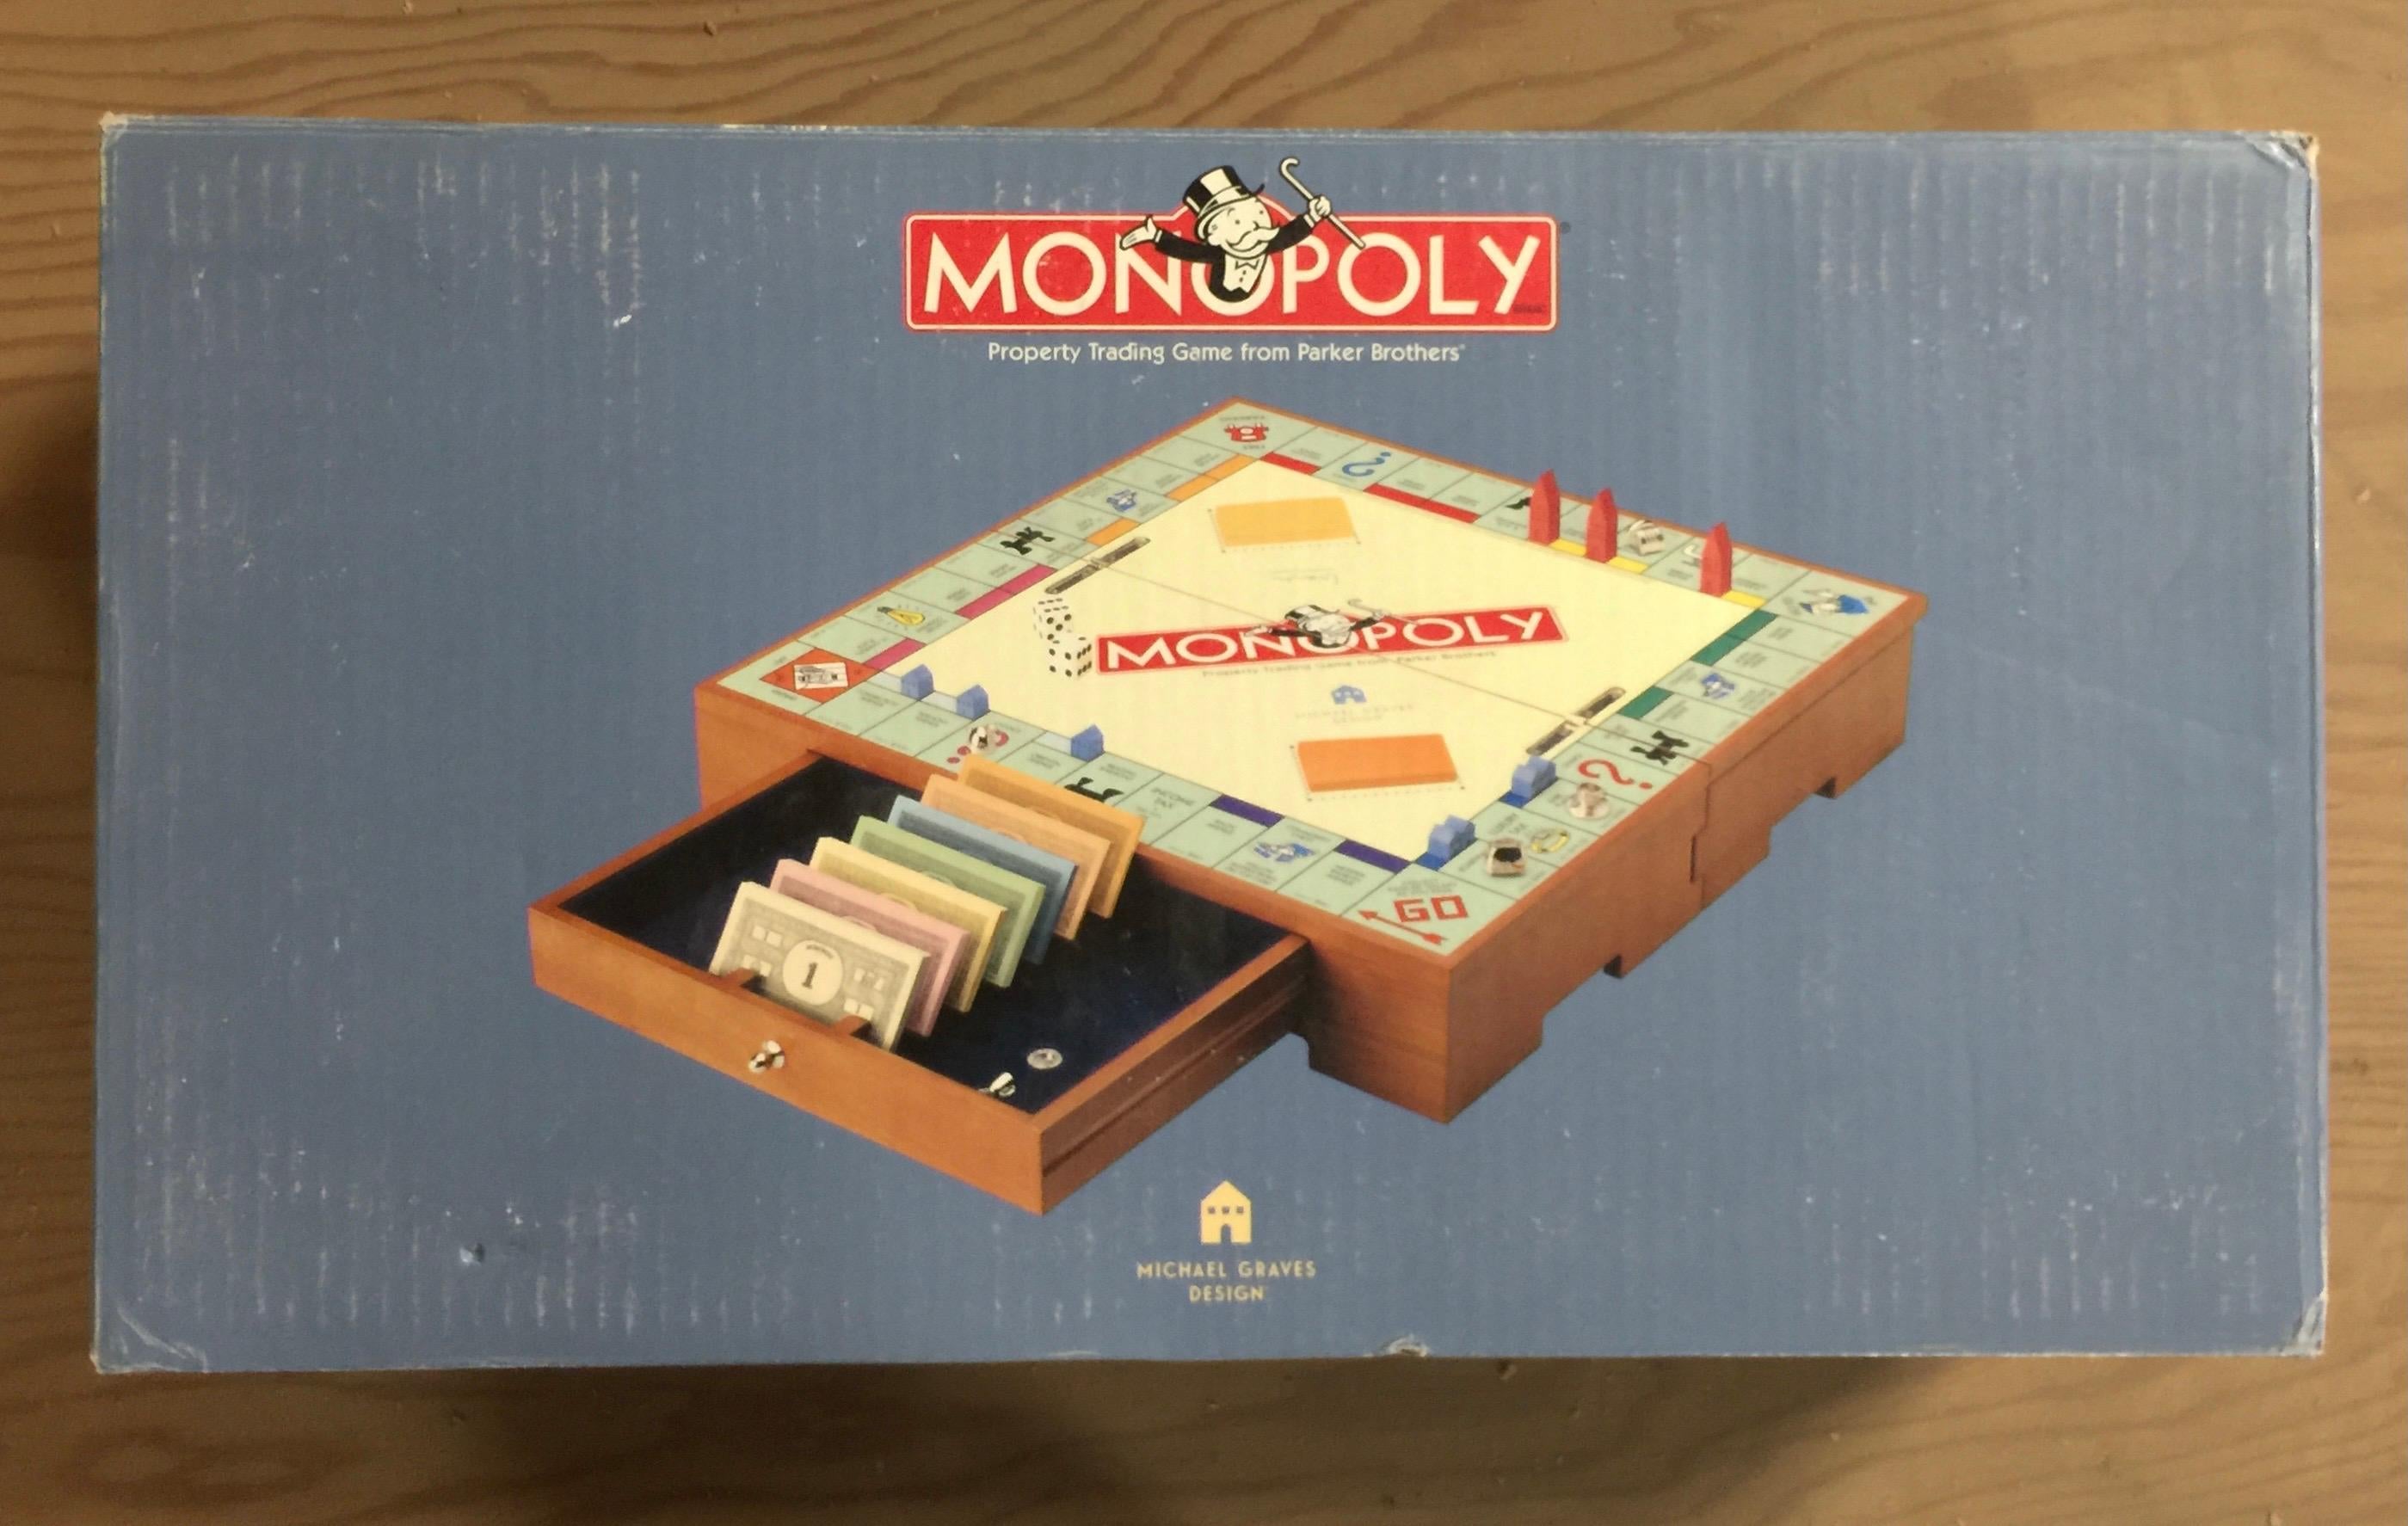 Das Monopoly-Spielset wurde von Michael Graves (geb. 1934 Indianapolis, IN - 2015 Princeton, NJ) für Parker Brothers entworfen. Ca. 2002. 

Signiert mit der Signatur von Graves, die in eine kleine Metallscheibe auf der Unterseite eingeritzt